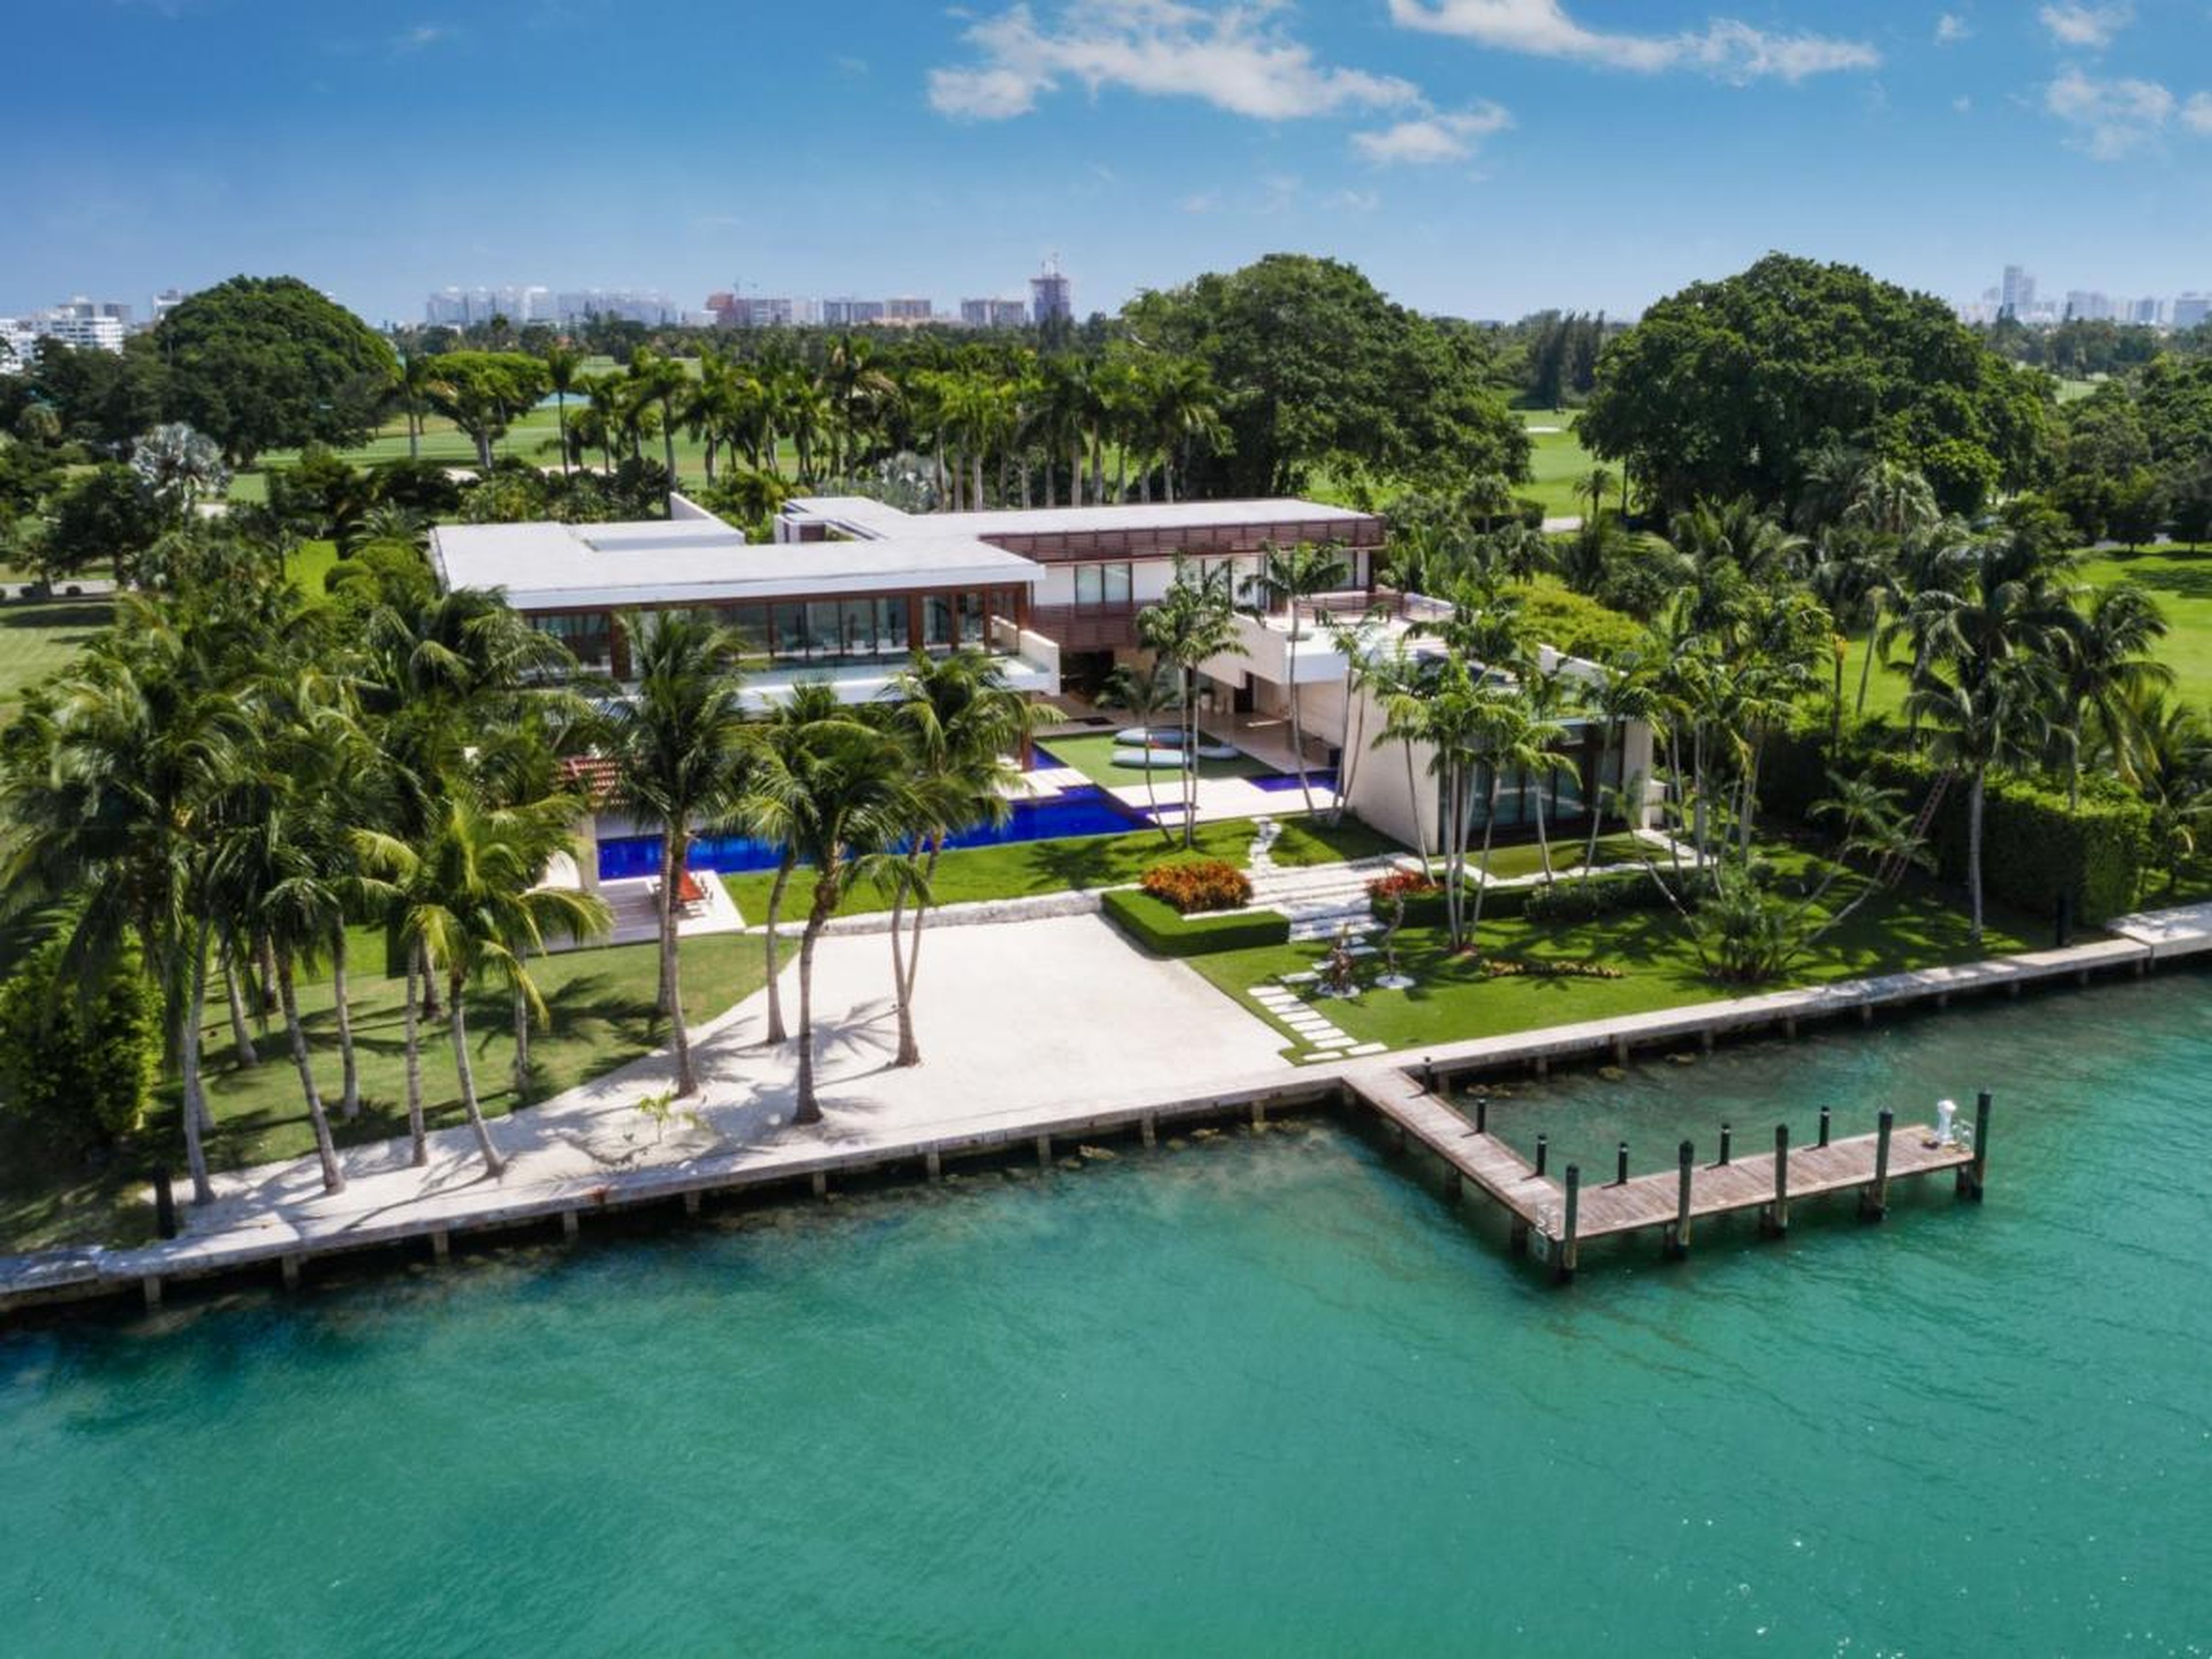 En febrero, una finca de Indian Creek que no estaba oficialmente en el mercado se vendió por 50 millones de dólares, rompiendo el récord de la casa unifamiliar más cara vendida en el área de Miami.